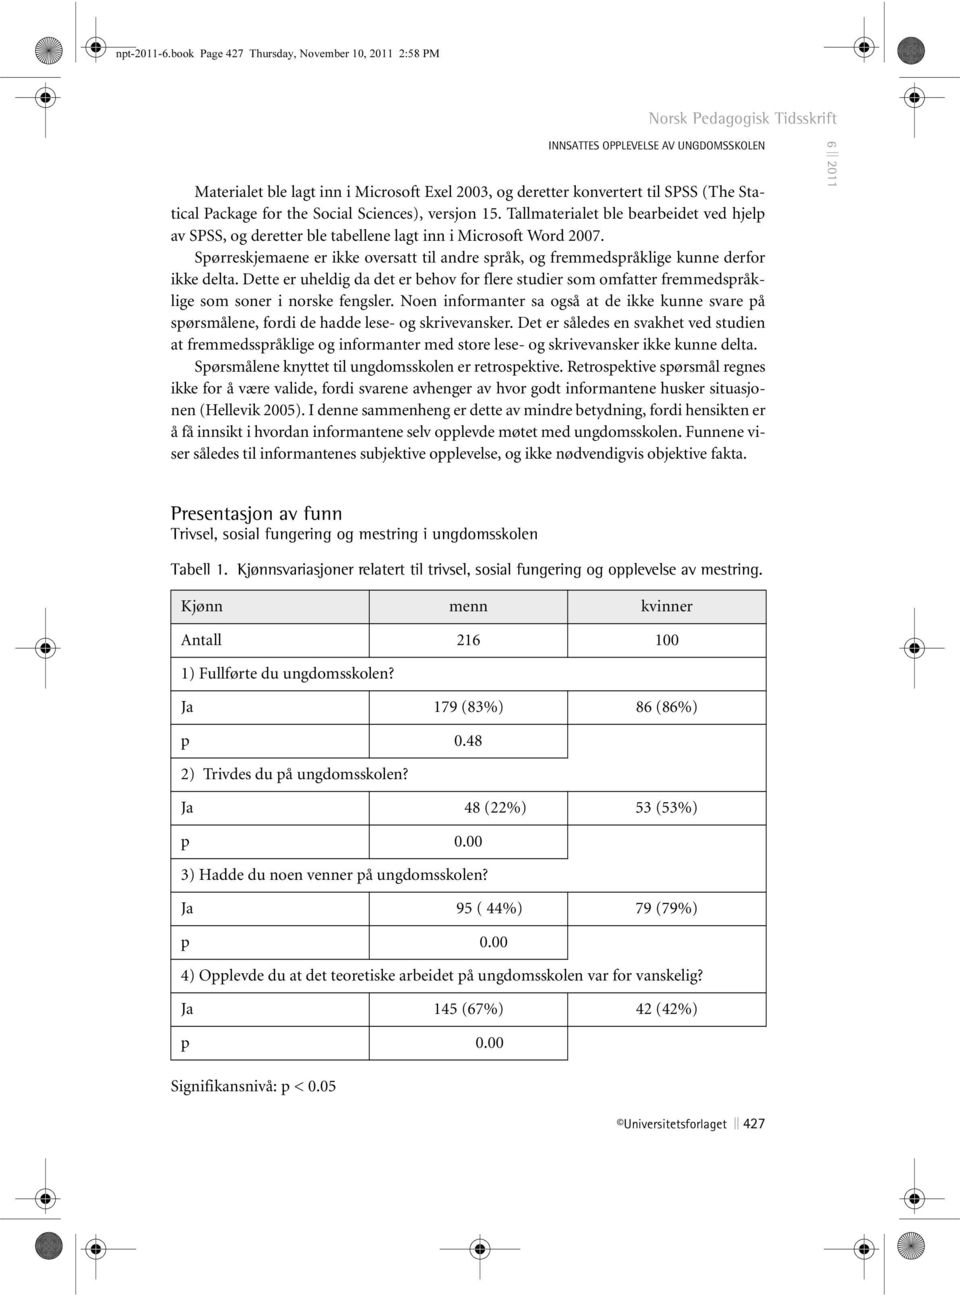 Social Sciences), versjon 15. Tallmaterialet ble bearbeidet ved hjelp av SPSS, og deretter ble tabellene lagt inn i Microsoft Word 2007.